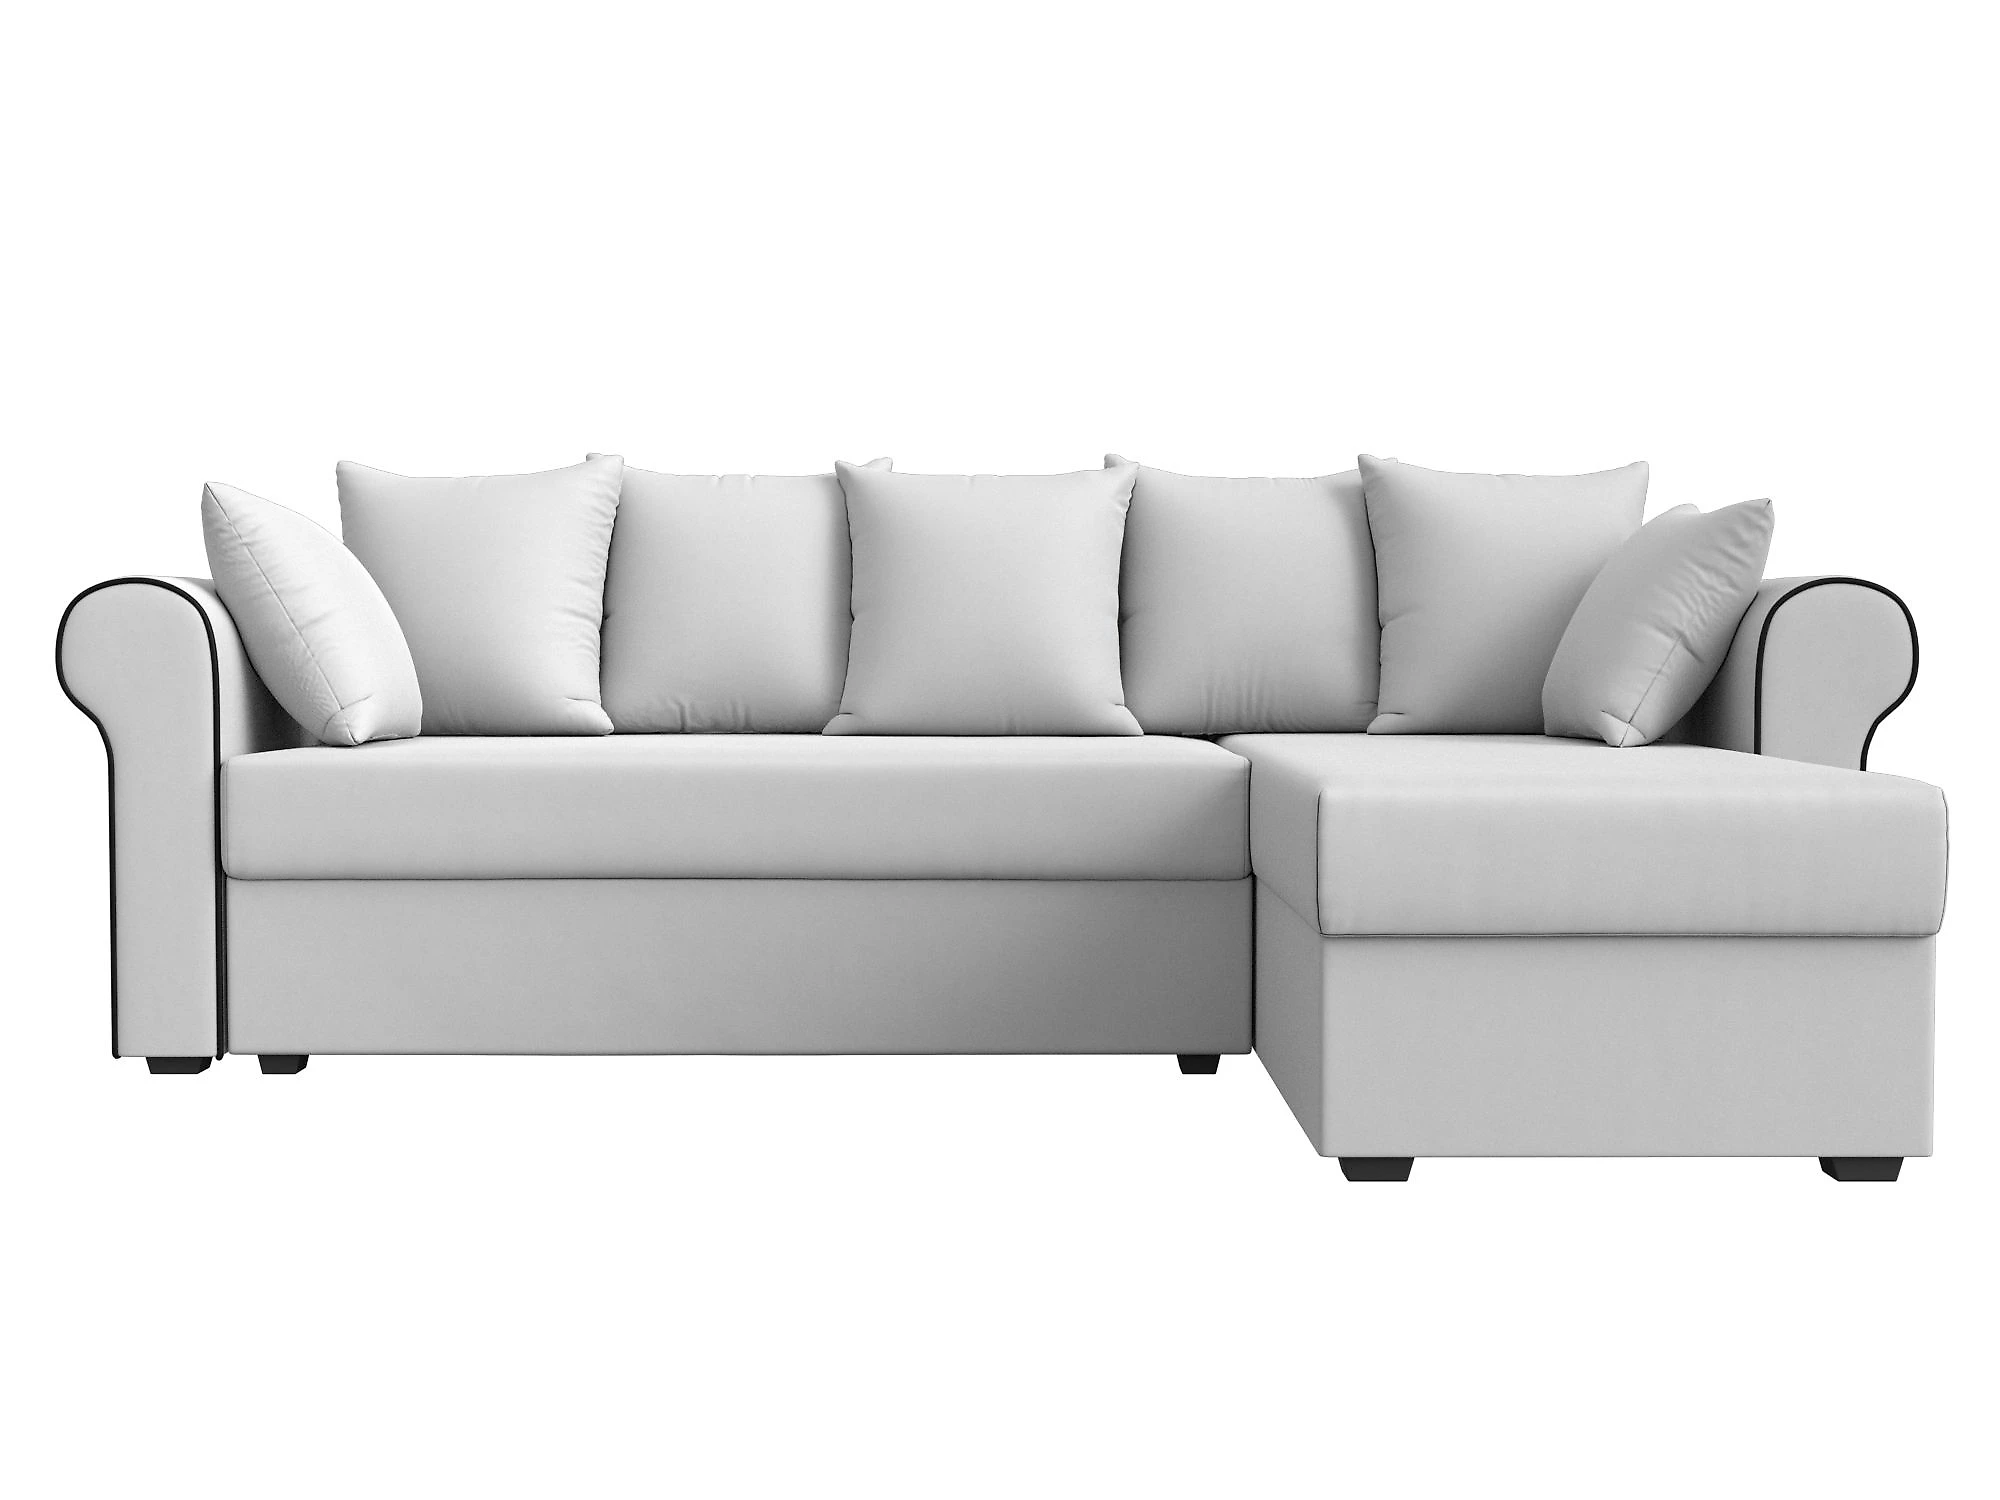  кожаный диван еврокнижка Рейн Дизайн 12